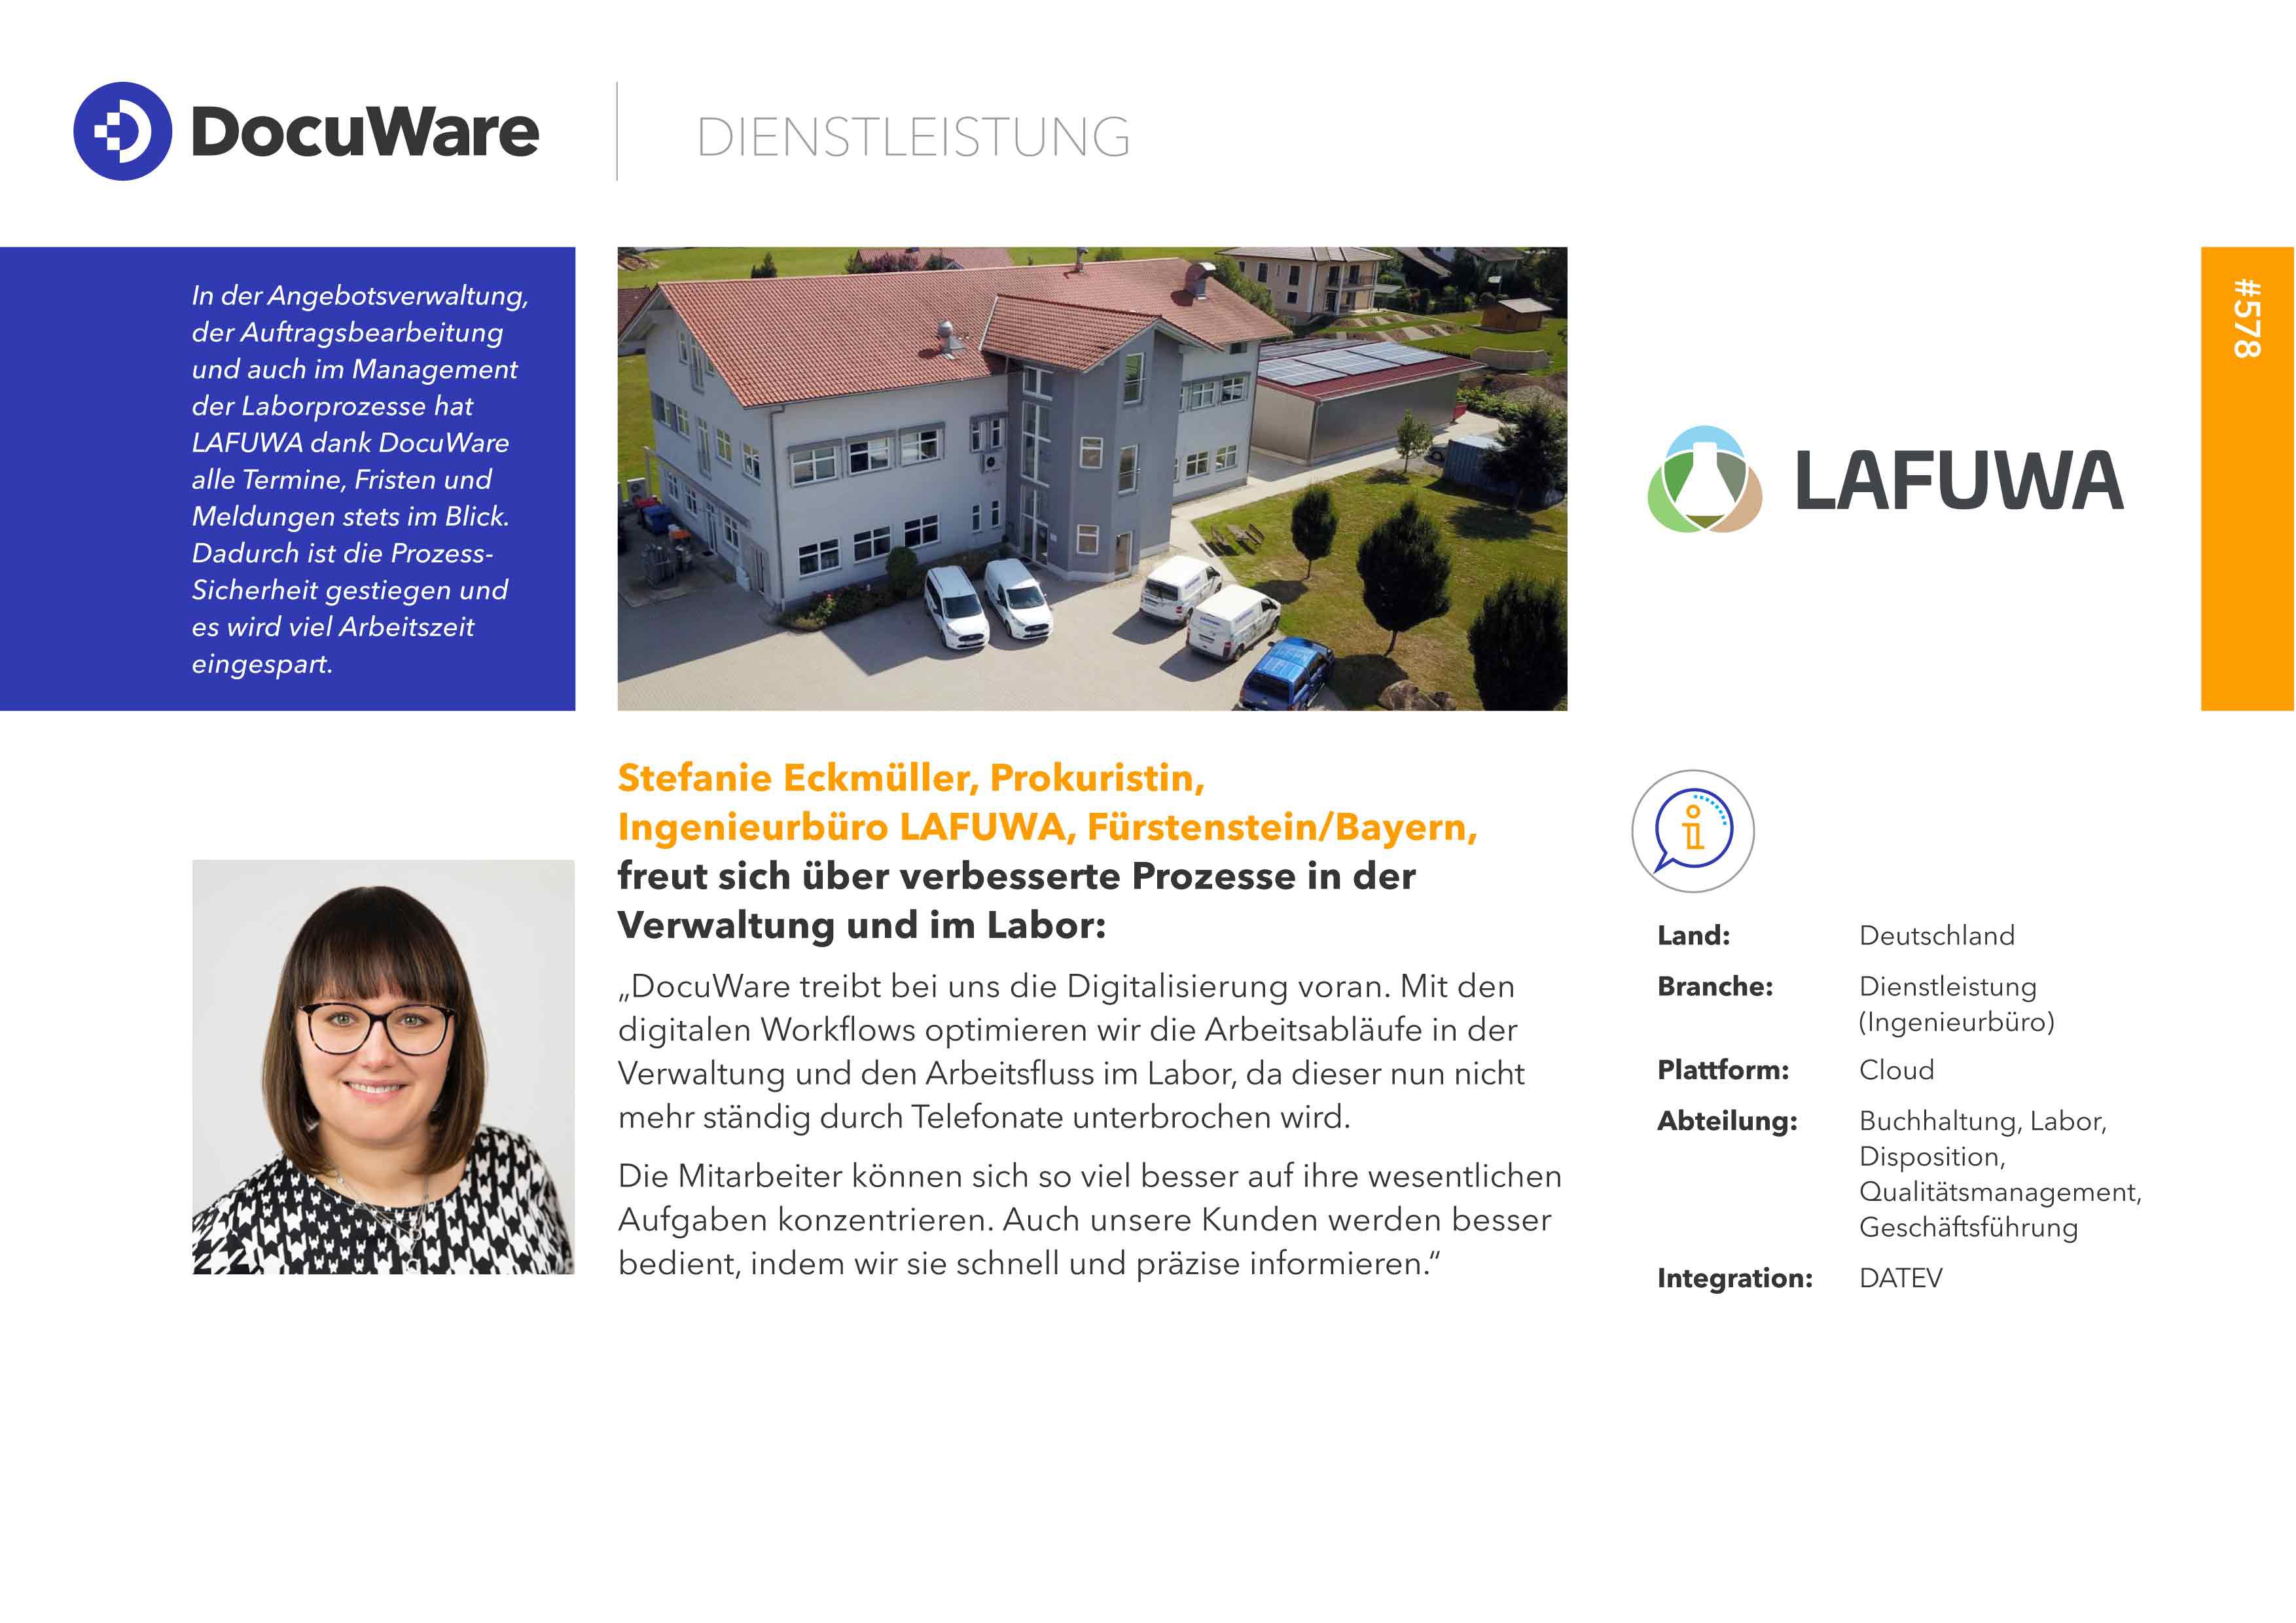 Referenzbericht des Ingenieurbüros Lafuma über das Arbeiten mit DocuWare